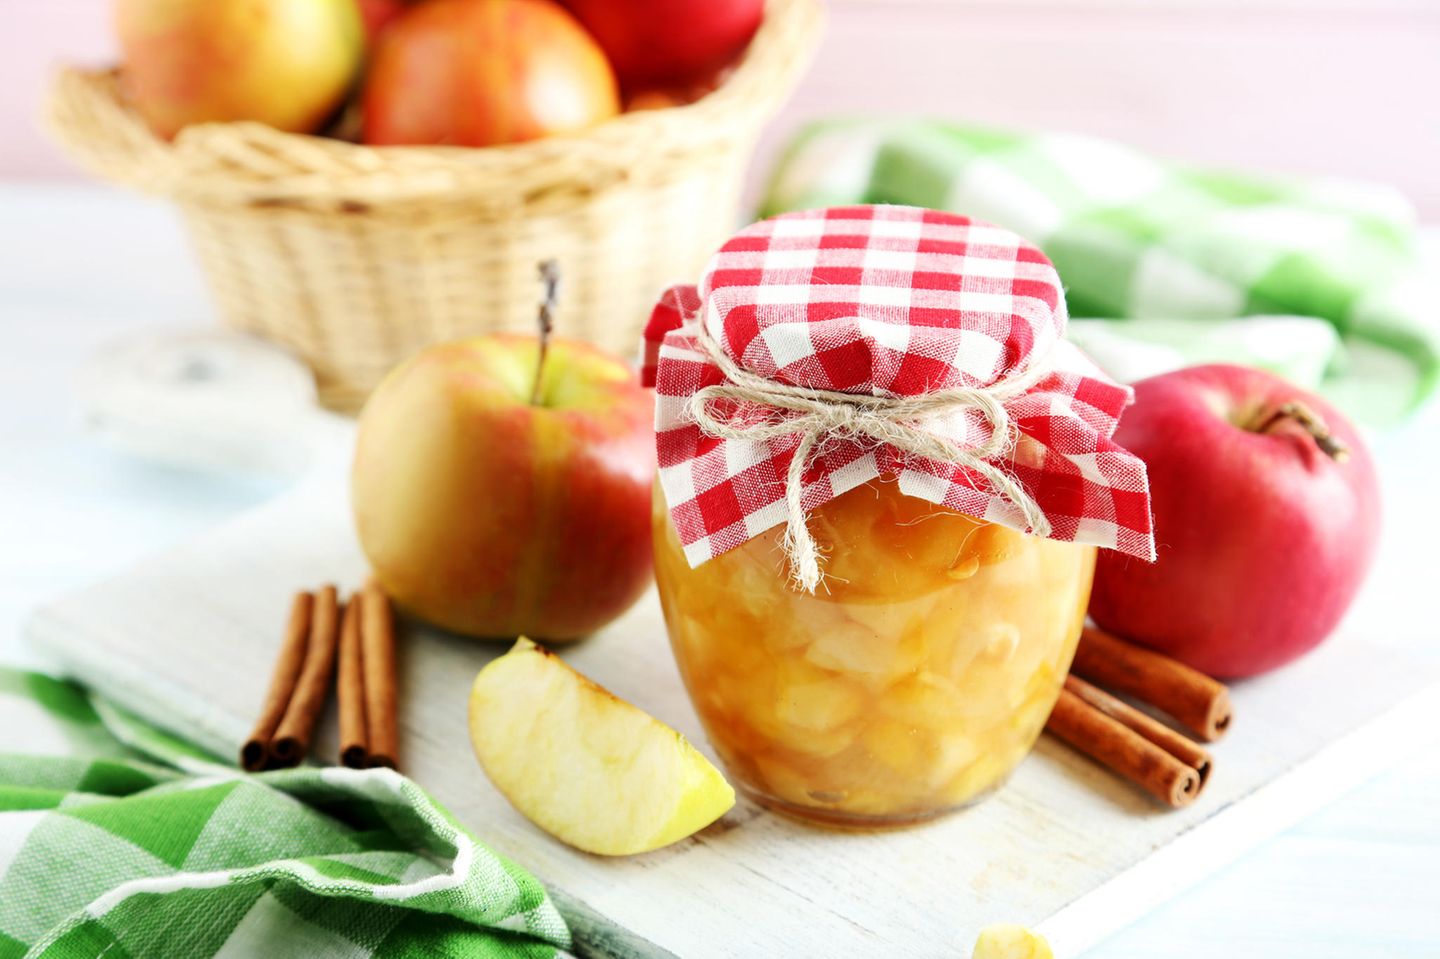 Äpfel einkochen: Eingekochte Äpfel im Glas